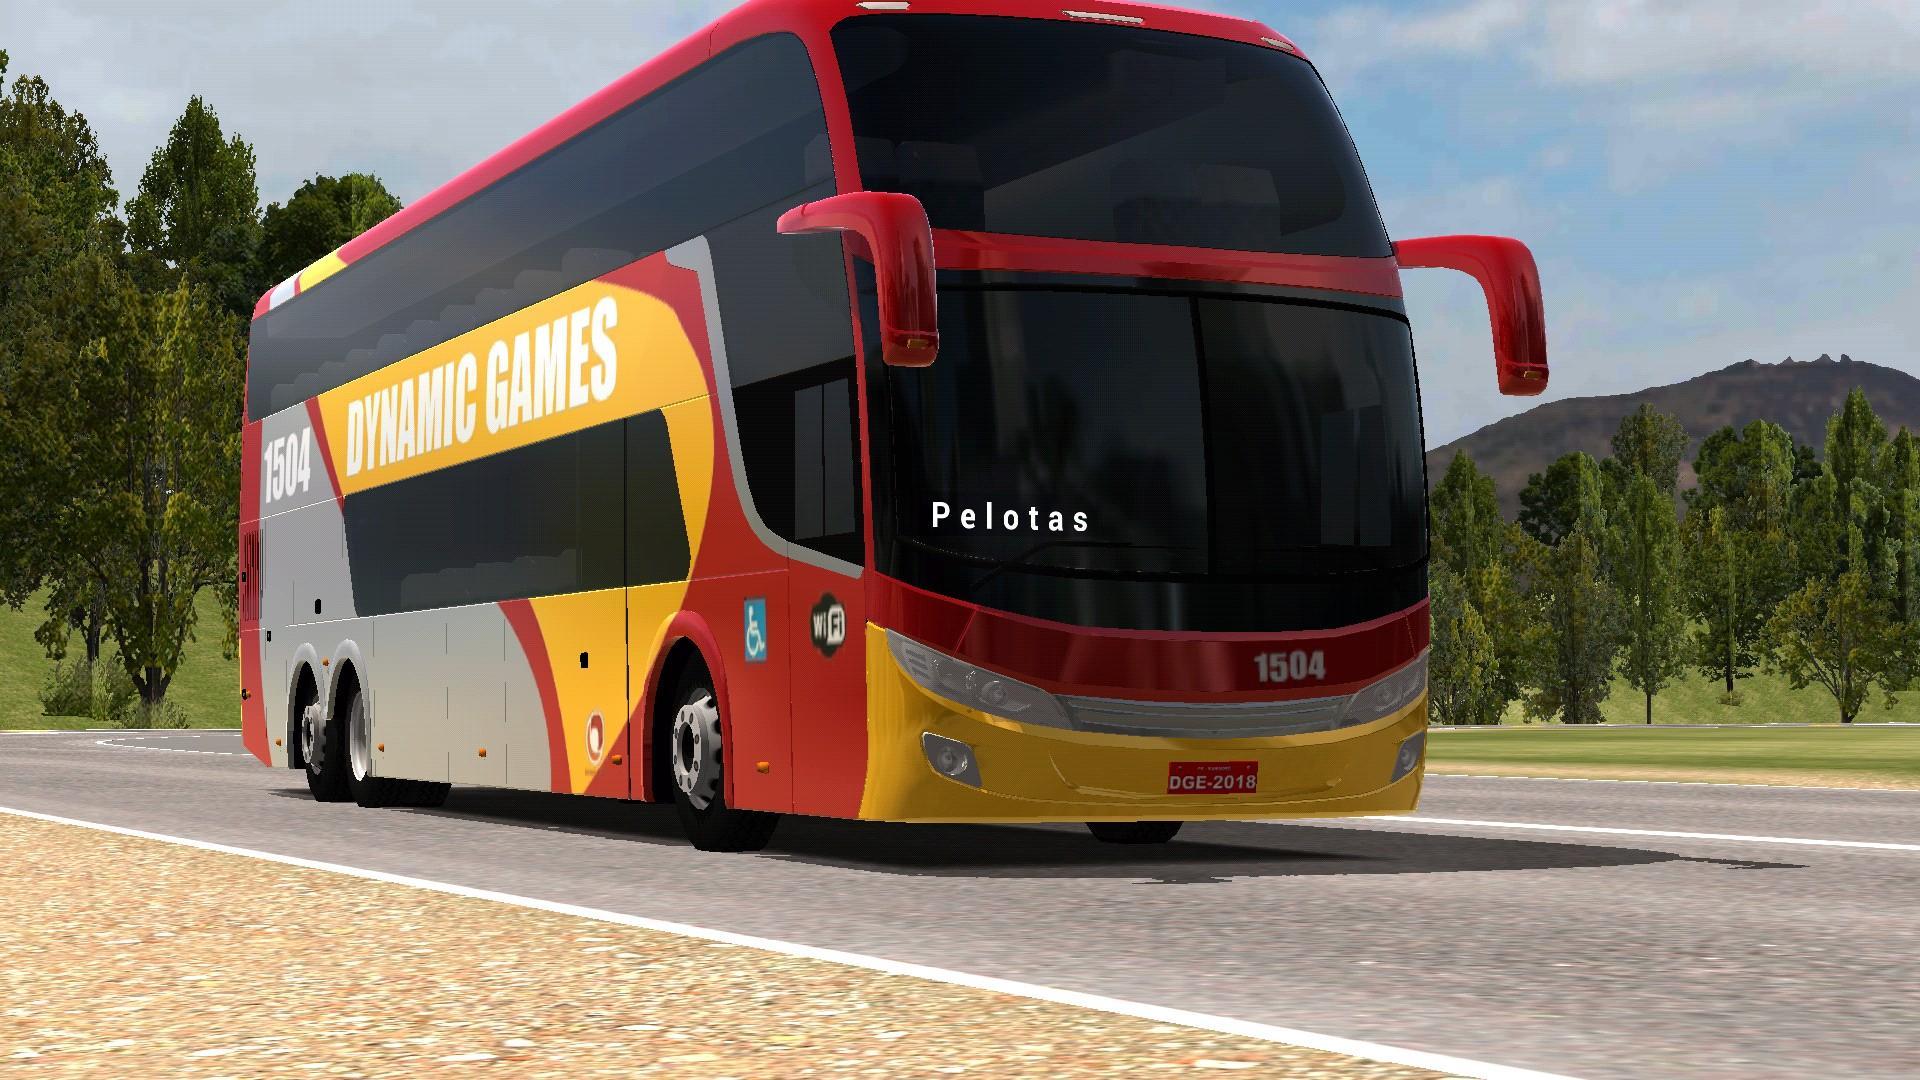 Bus Drive Simulator em Jogos na Internet